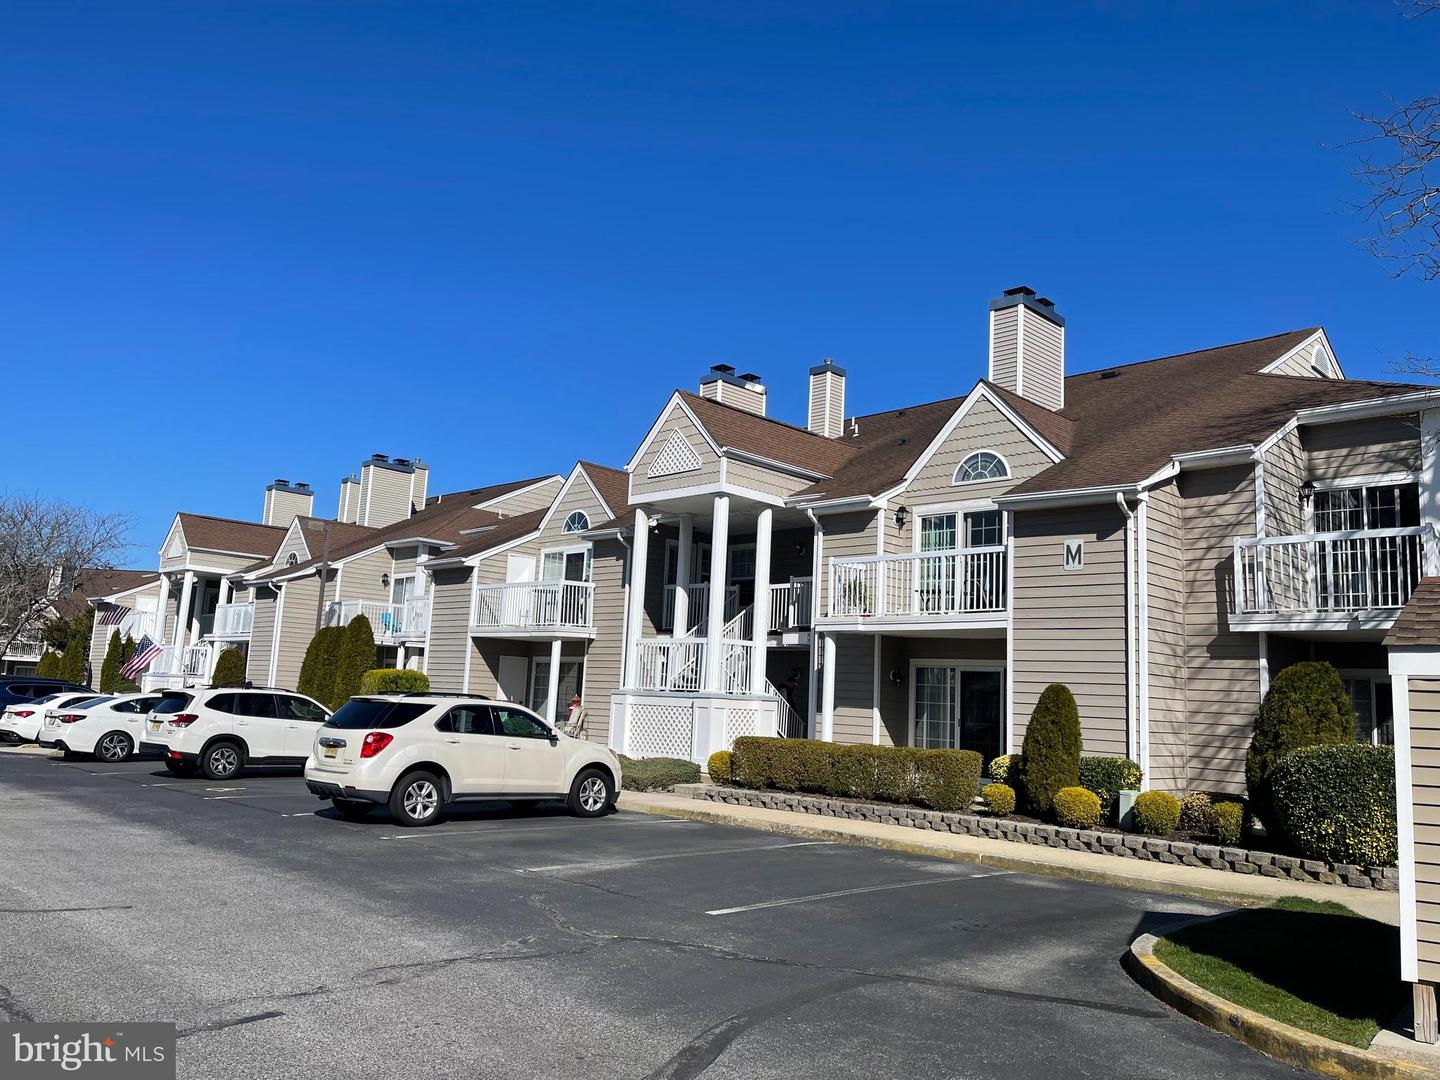 Linwood, NJ Real Estate Housing Market & Trends | Coldwell Banker